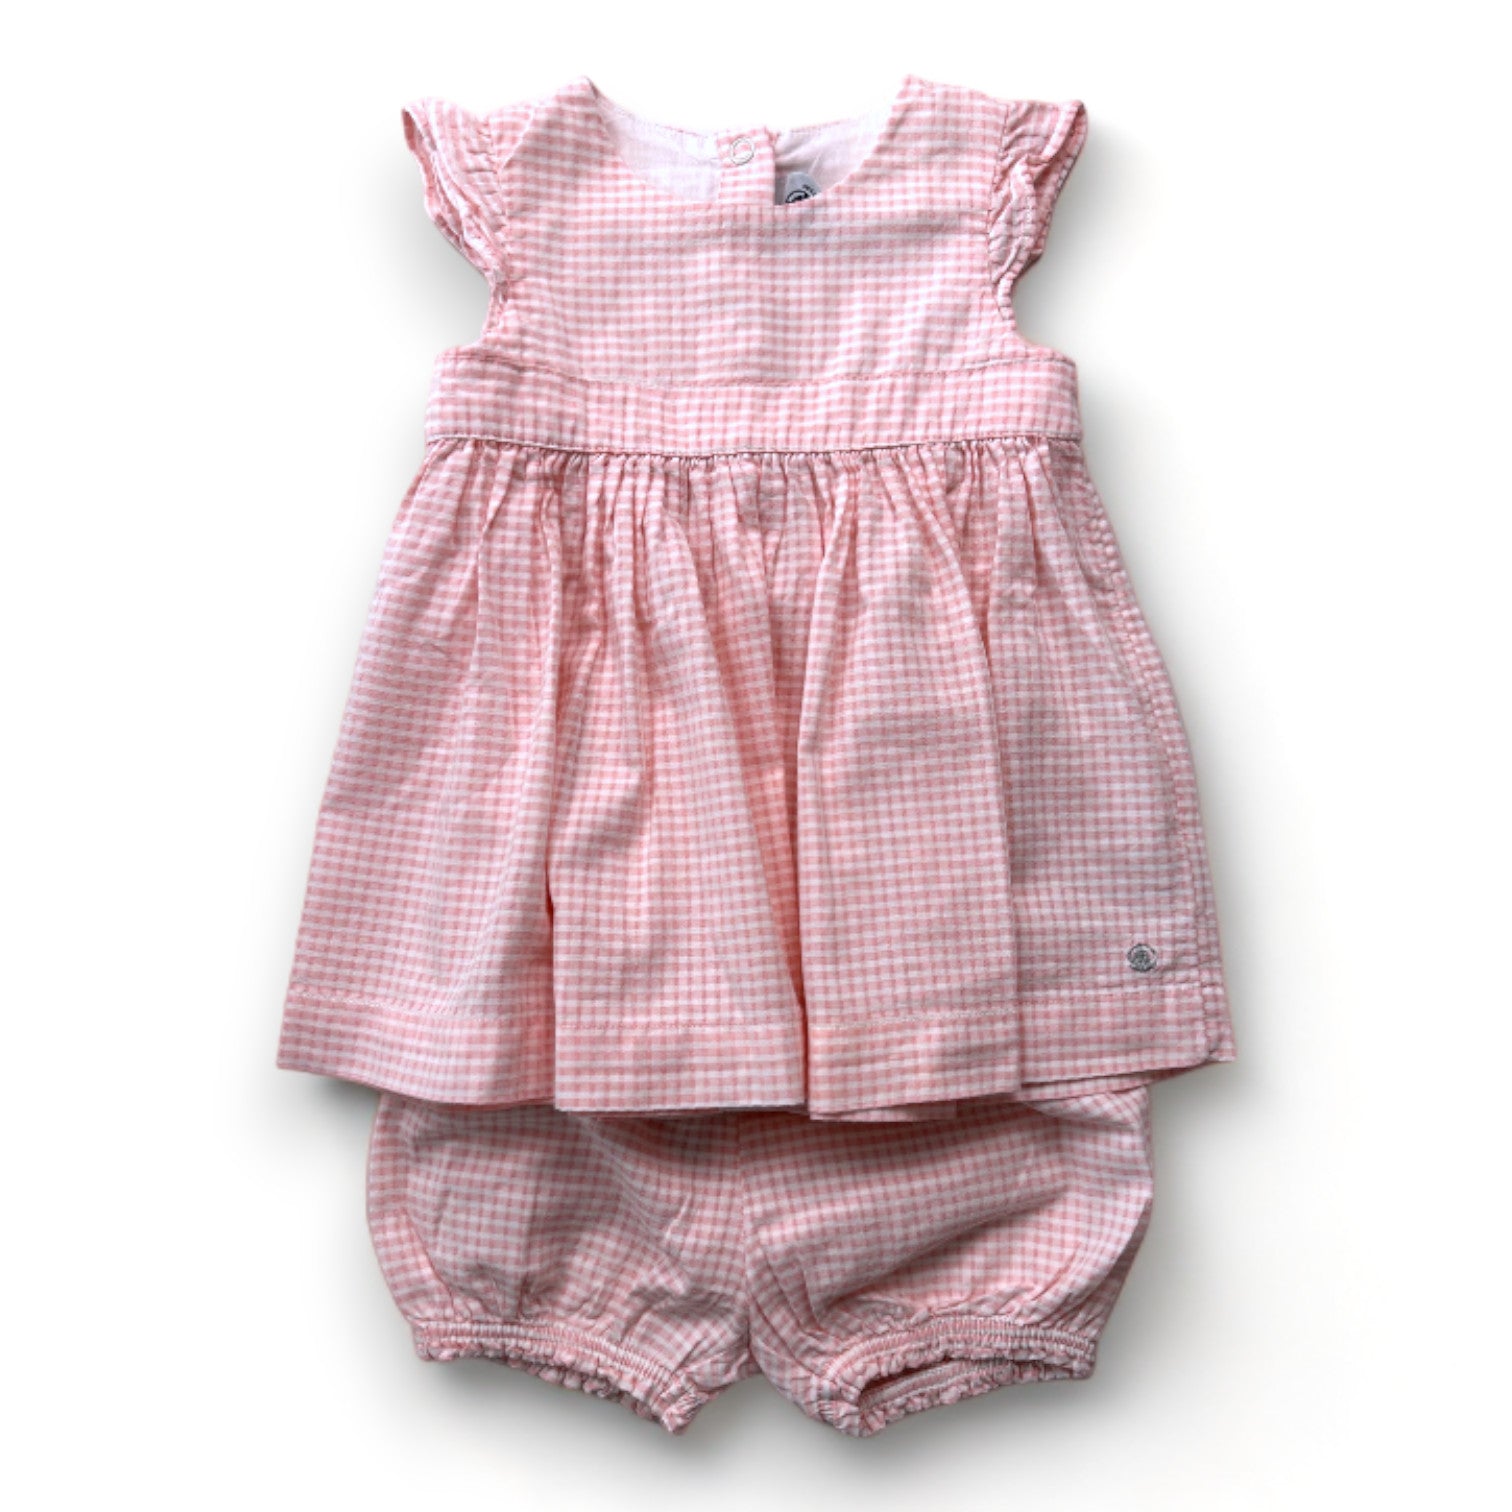 PETIT BATEAU - robe rose et blanche avec bloomer - 6 mois